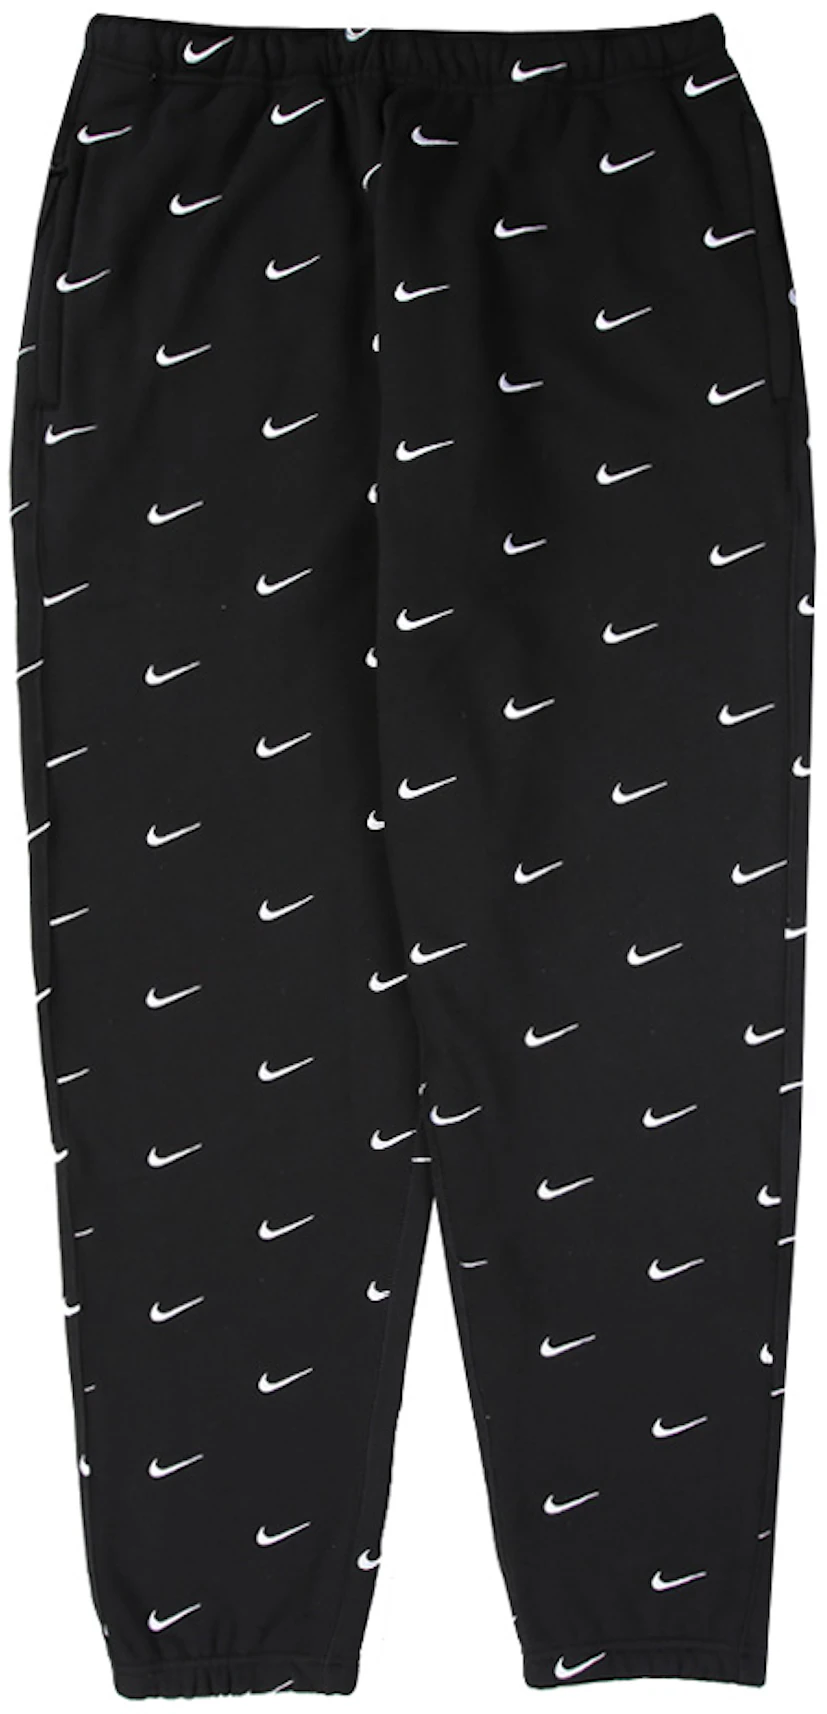 Ongunstig Overvloedig Erge, ernstige Nike All Over Swoosh Logo Pants Black - FW19 - US